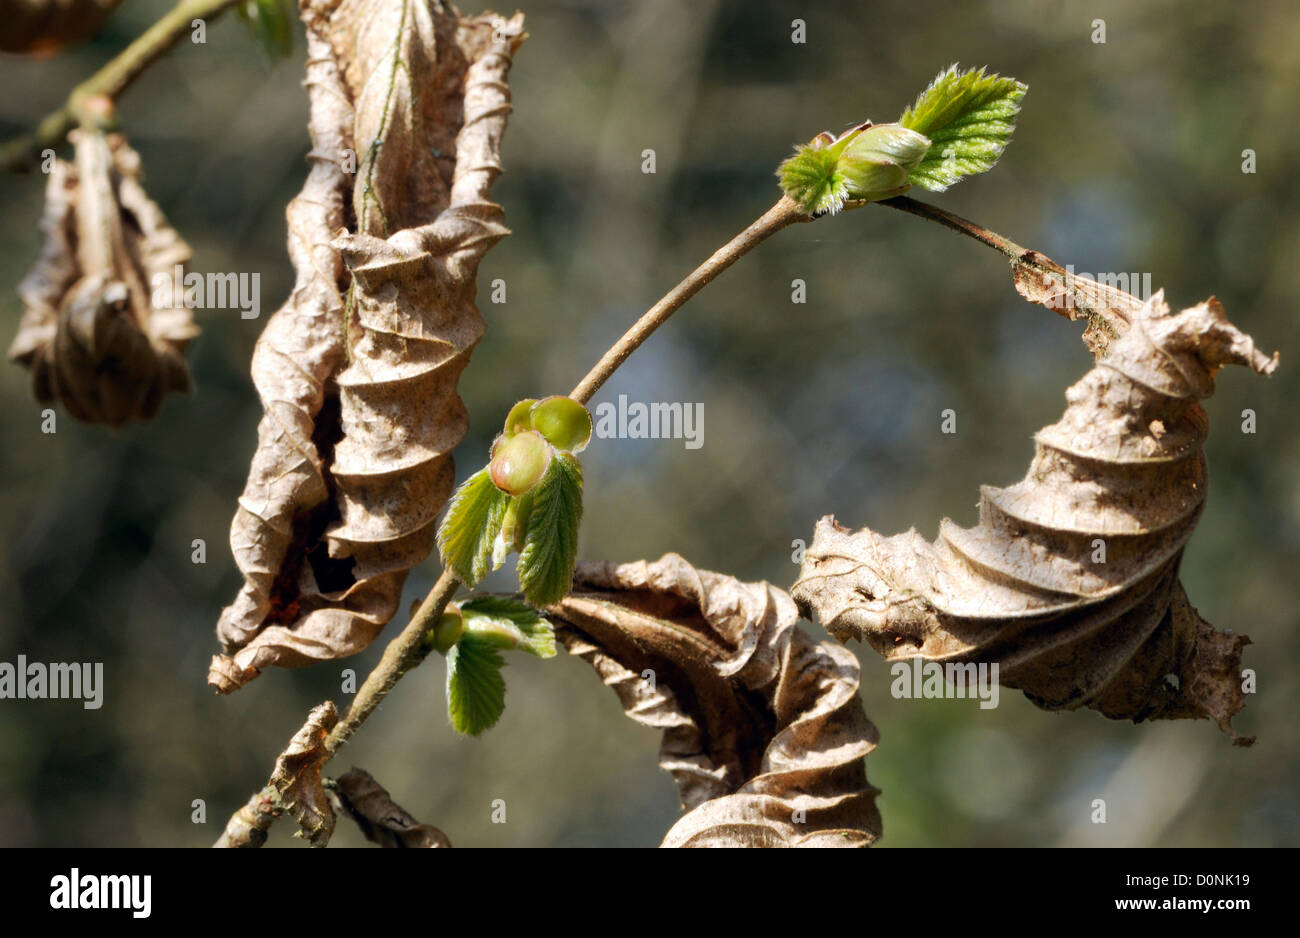 Hainbuche (Carpinus Betulus) Blattknospen öffnen während der letztjährigen Laub noch am Baum sind. Bedgebury Wald, Kent, UK. Stockfoto